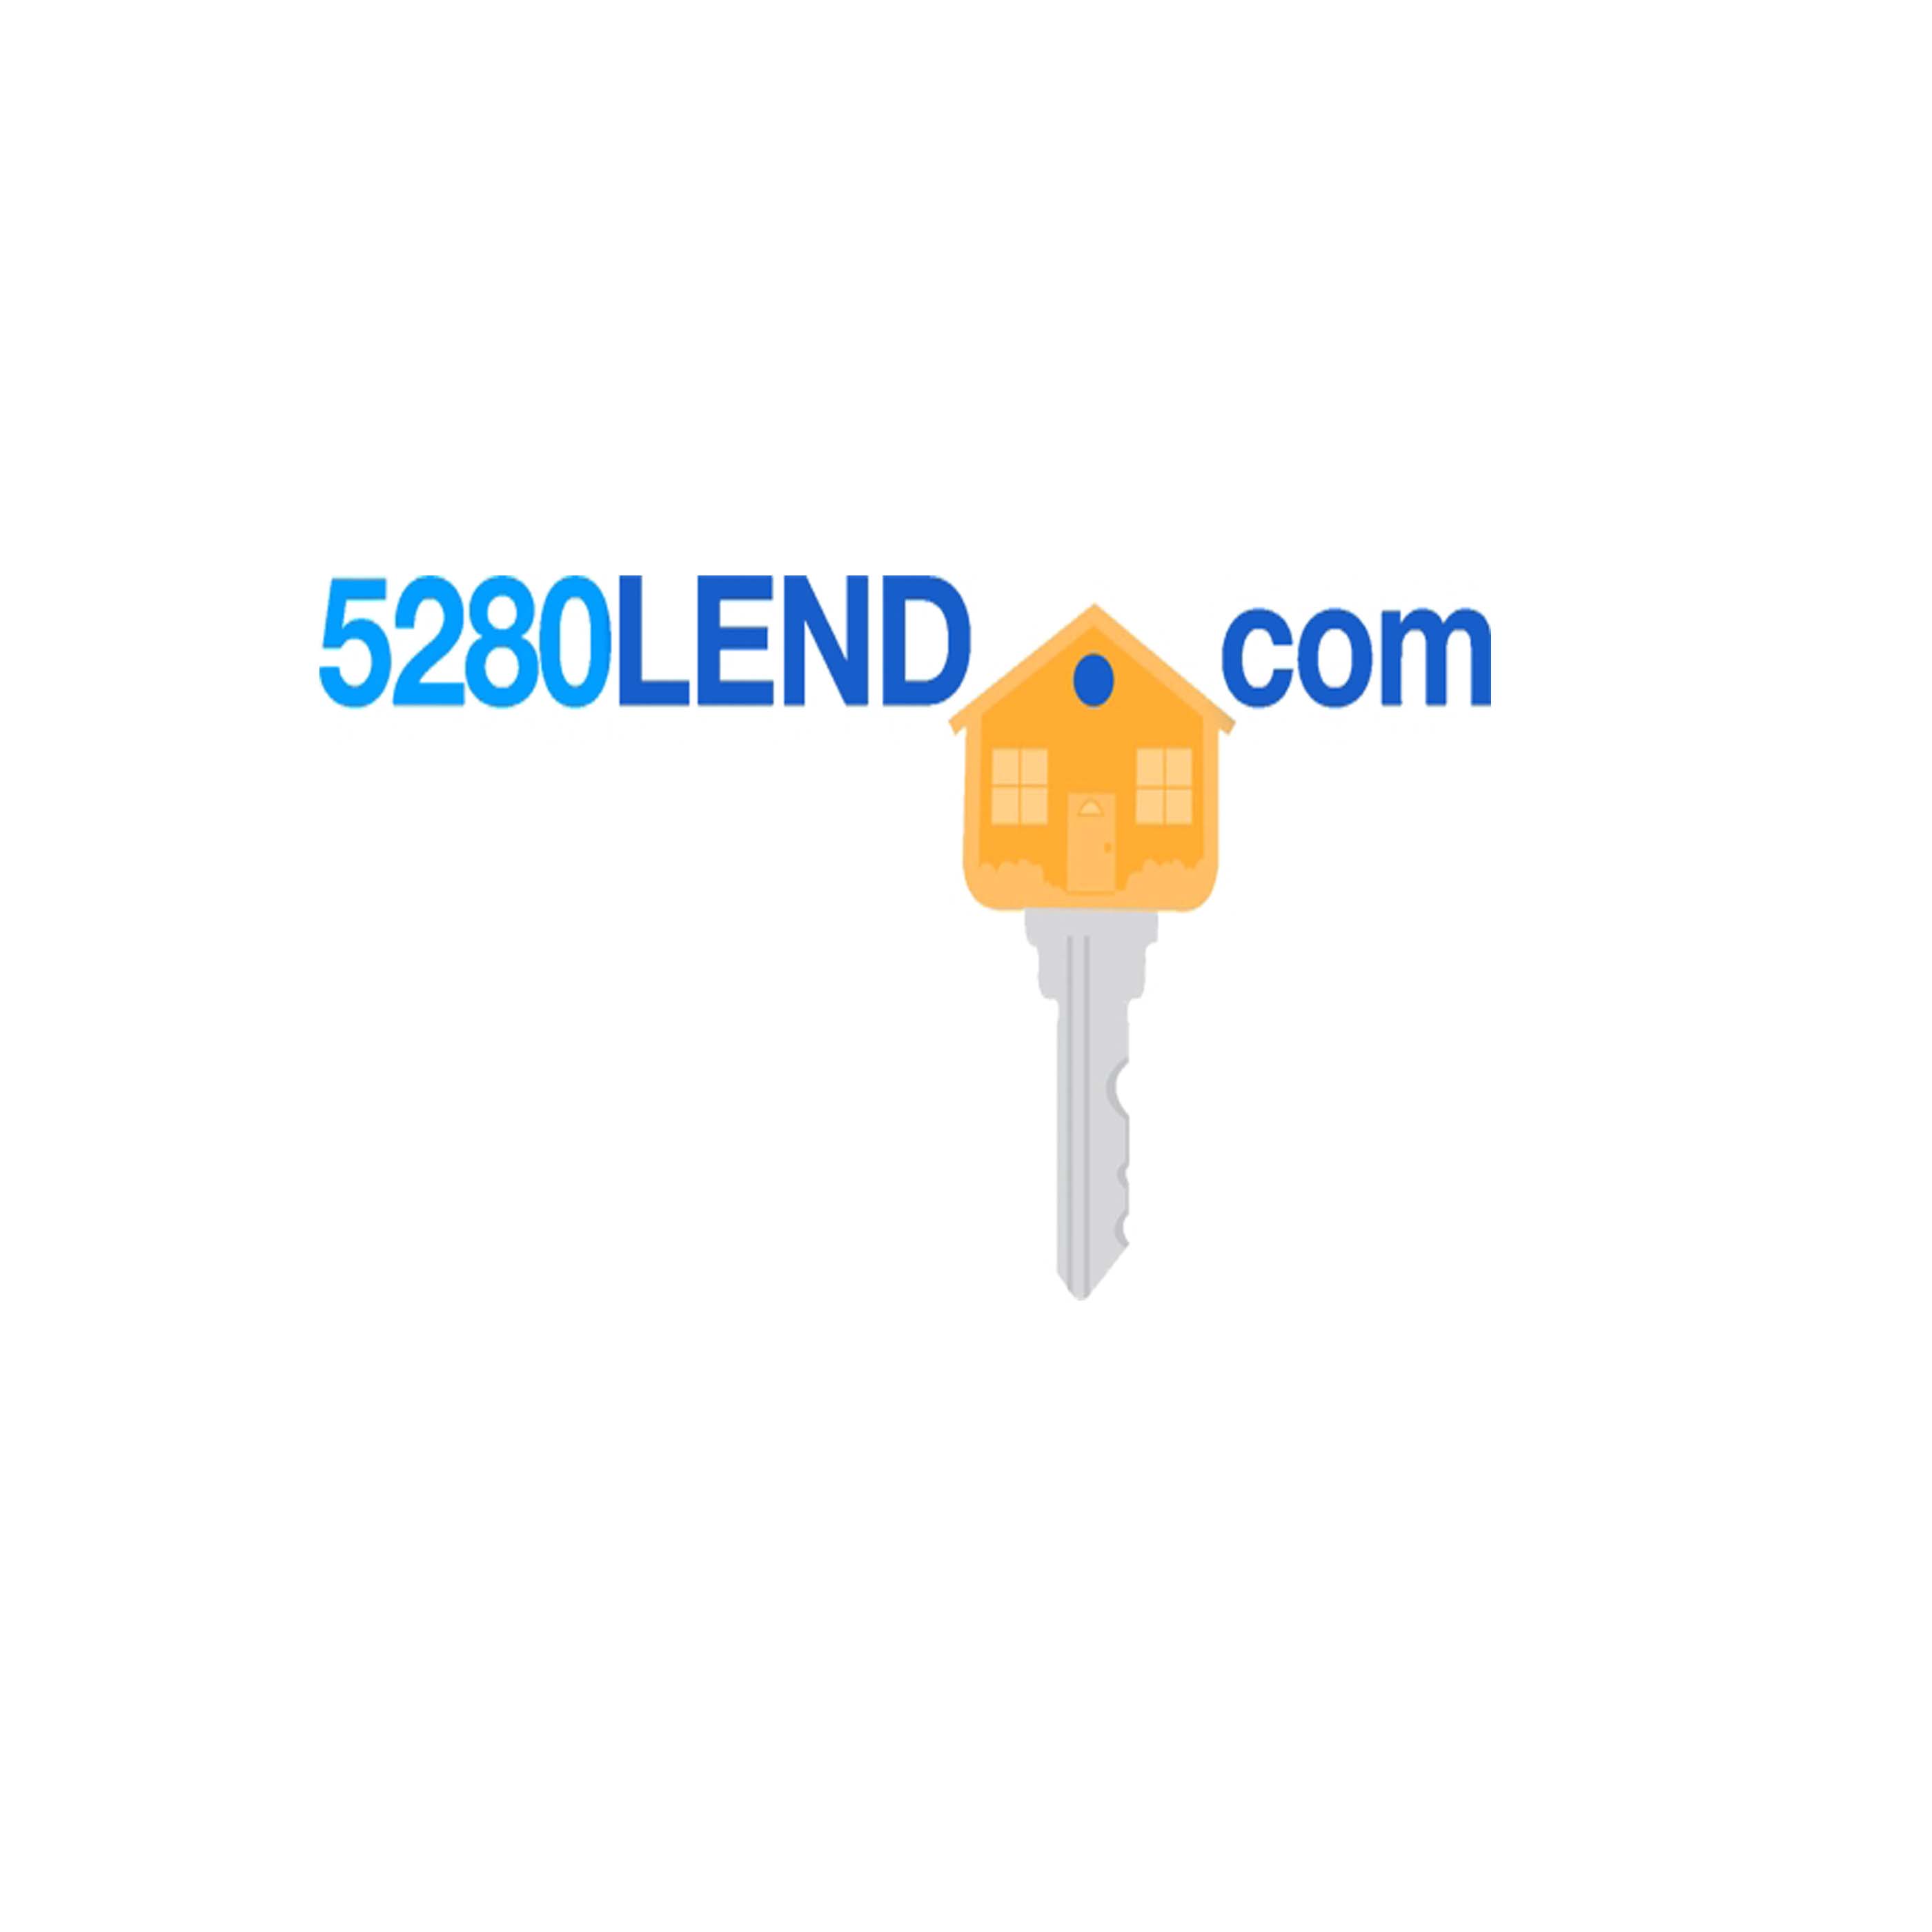 Company logo of 5280lend.com